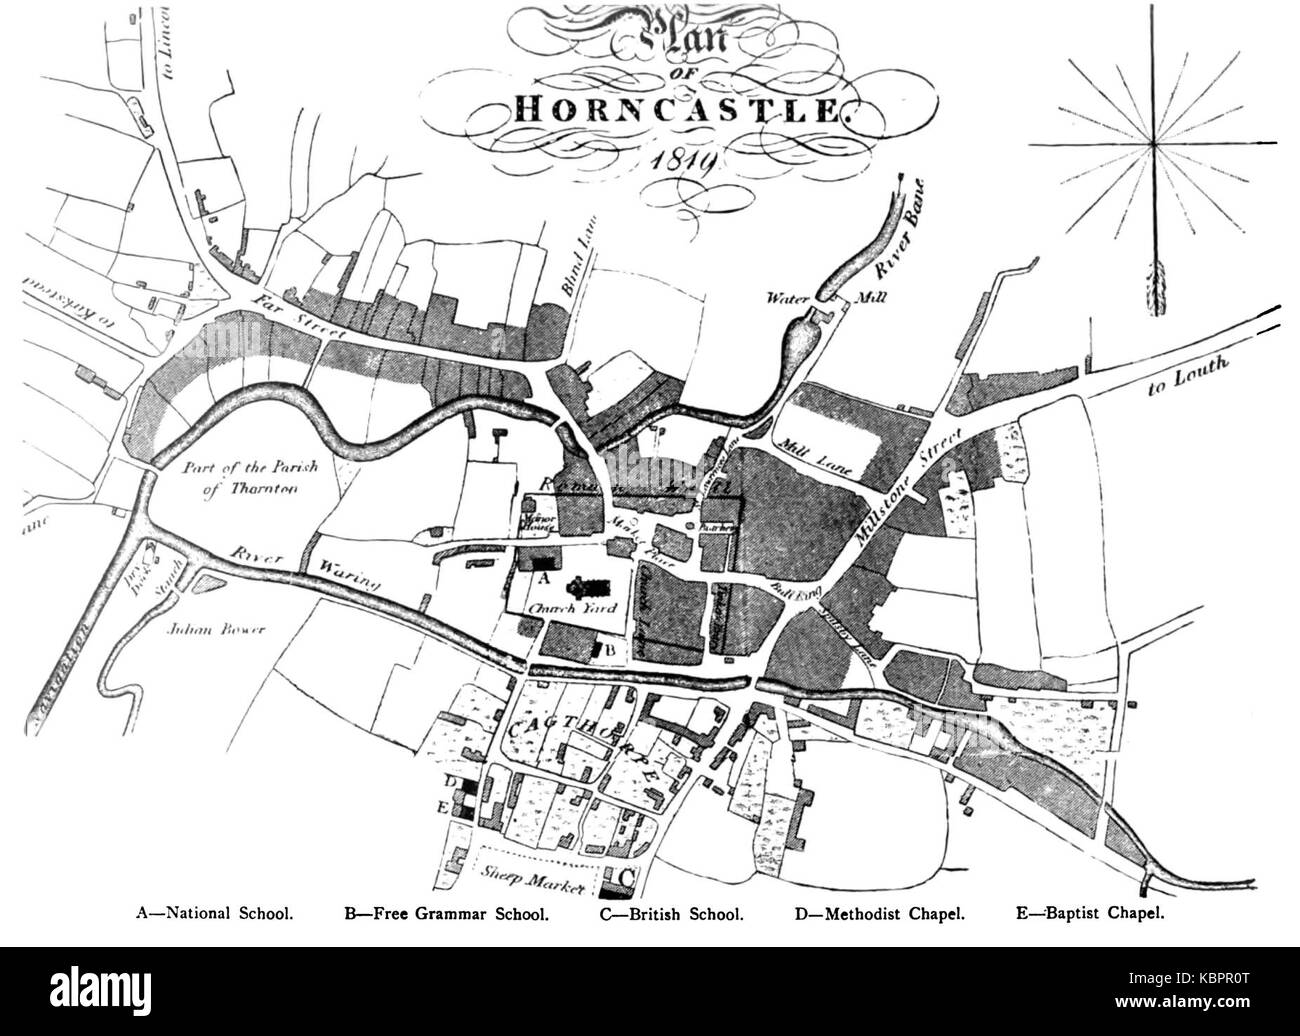 Una Historia De Horncastle Pagina 15 Kbpr0t 